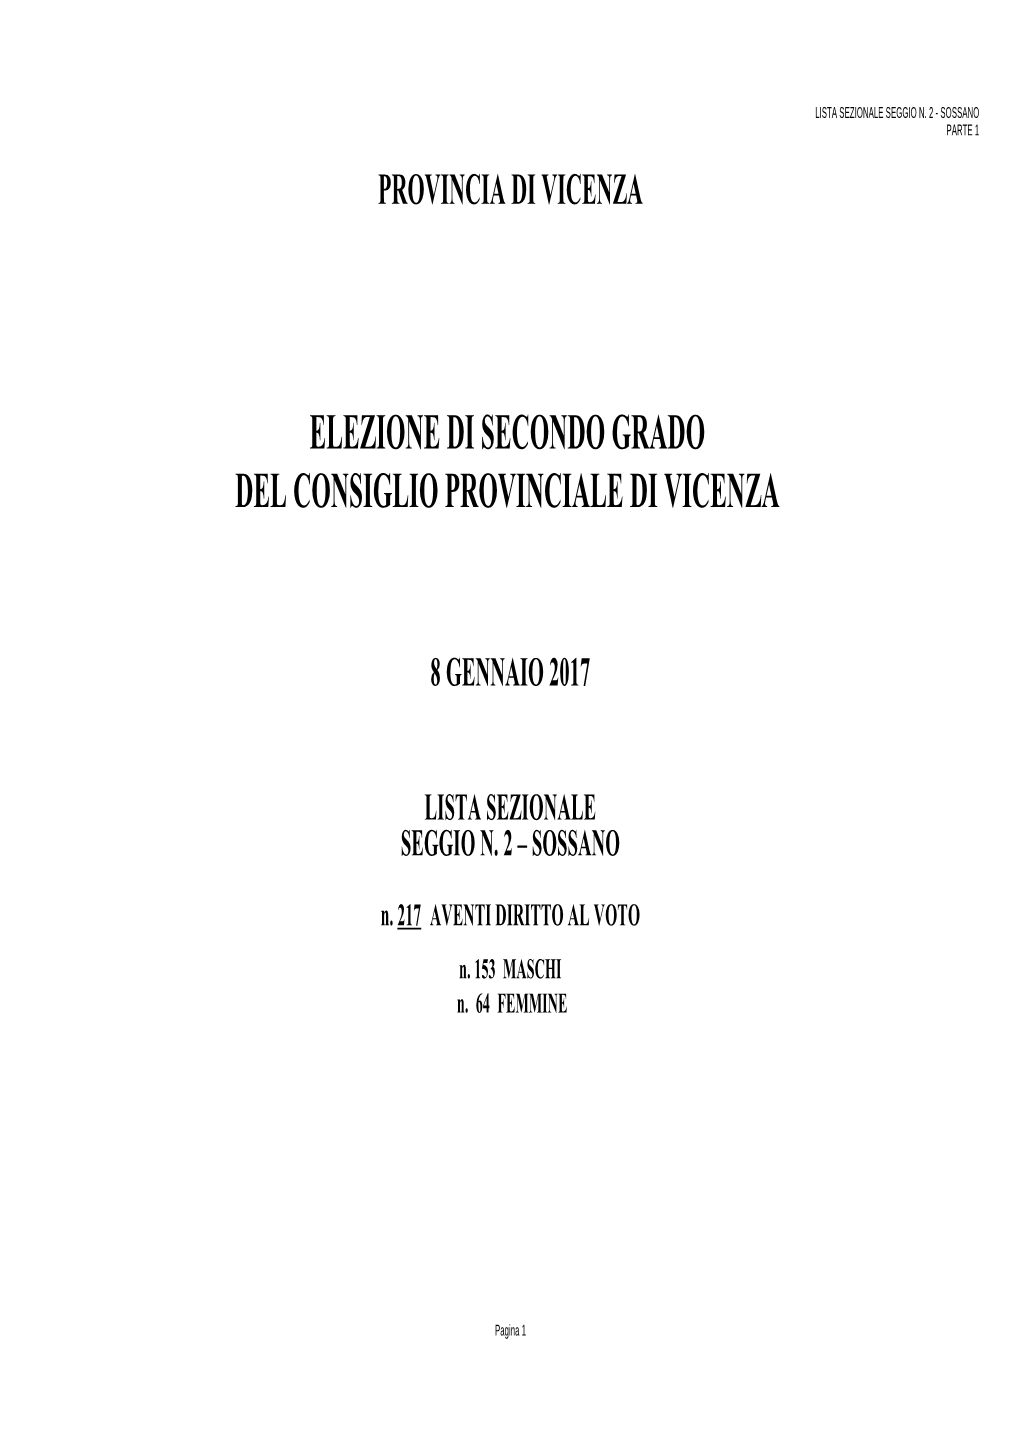 Elezione Di Secondo Grado Del Consiglio Provinciale Di Vicenza